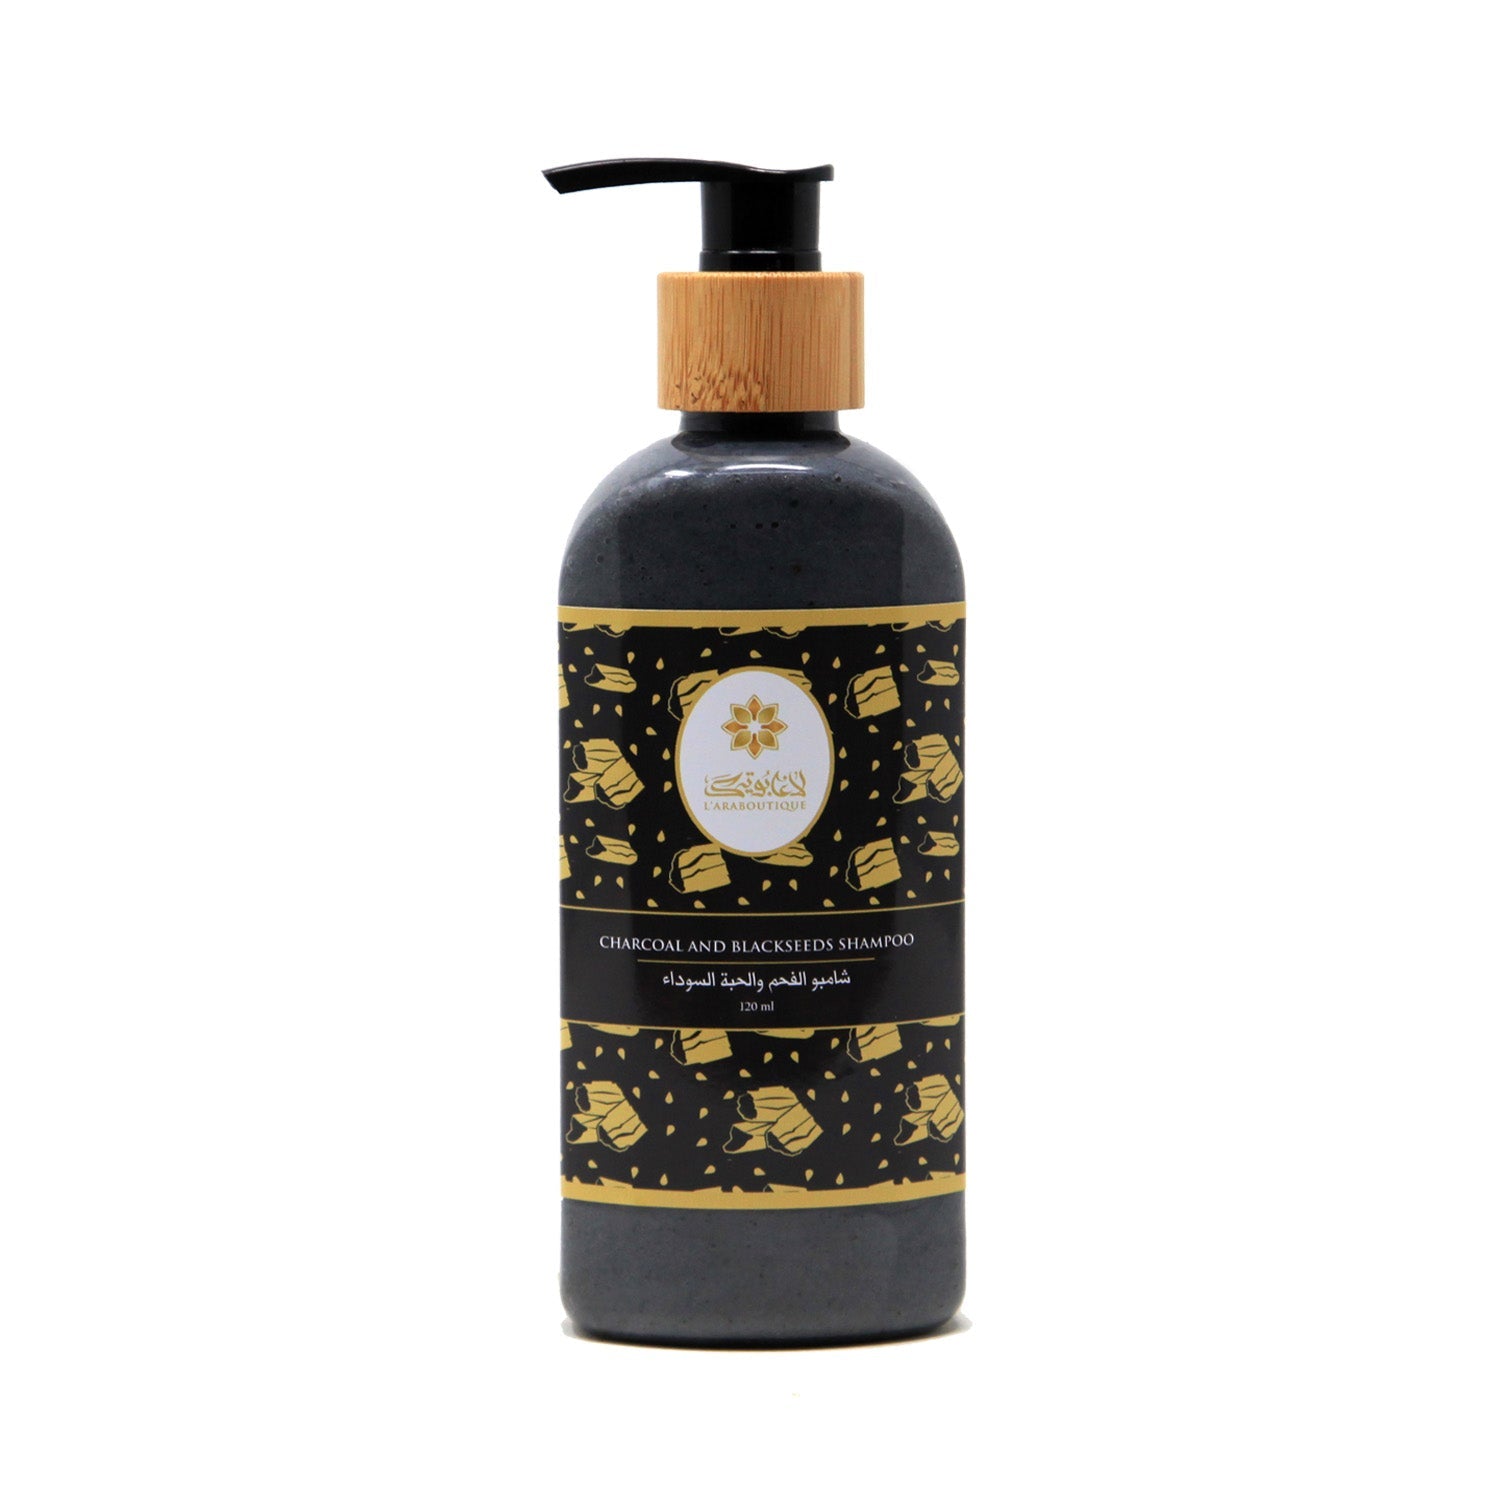 Charcoal and Blackseeds Shampoo - 250ml